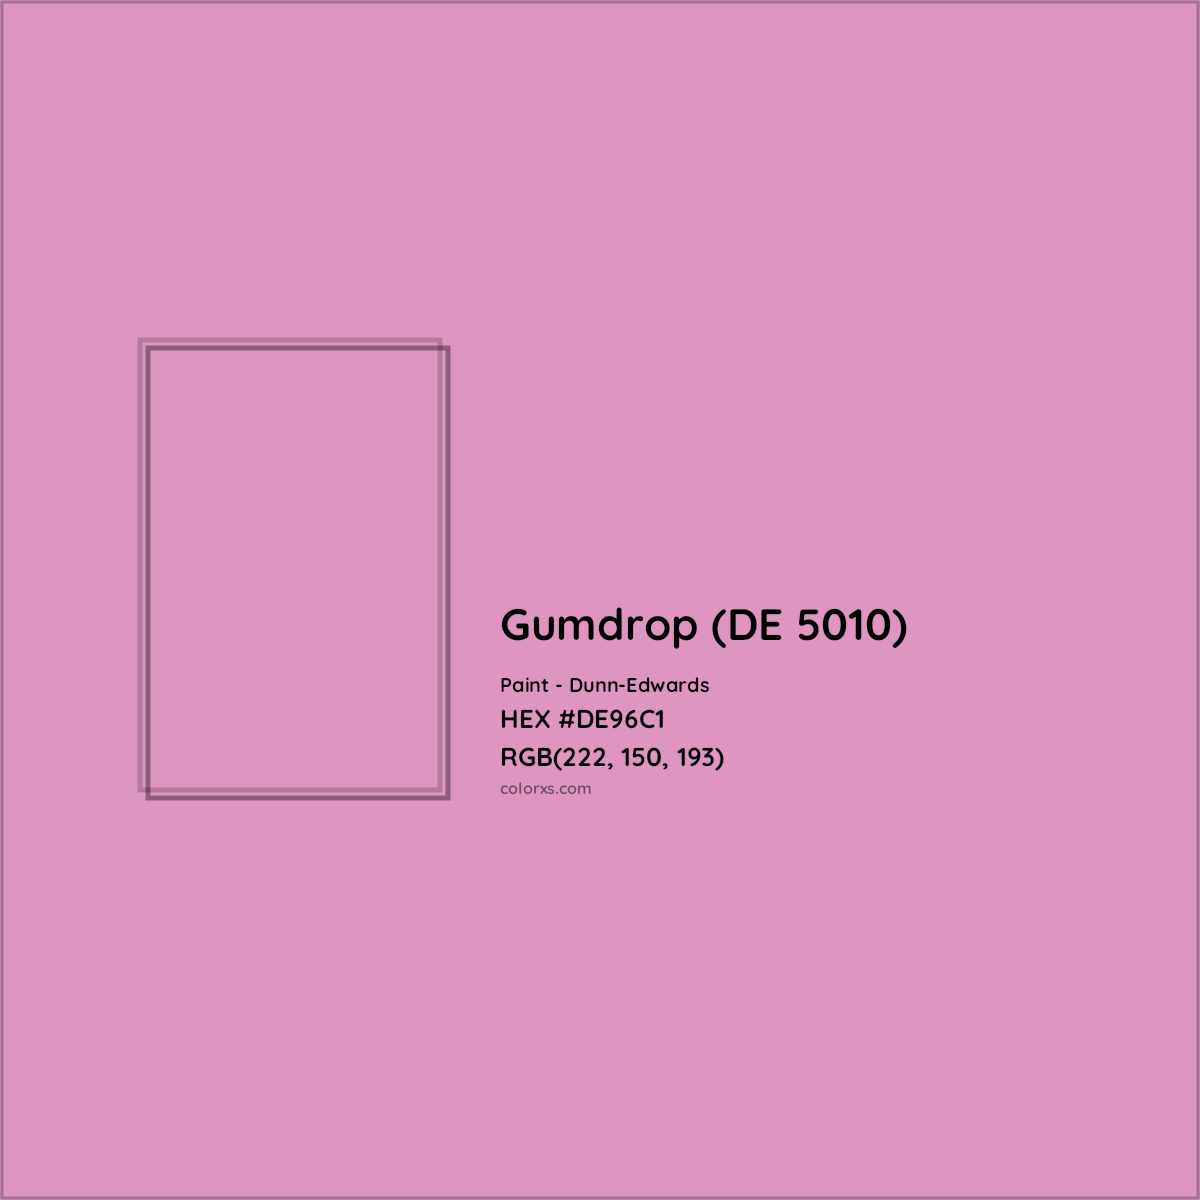 HEX #DE96C1 Gumdrop (DE 5010) Paint Dunn-Edwards - Color Code